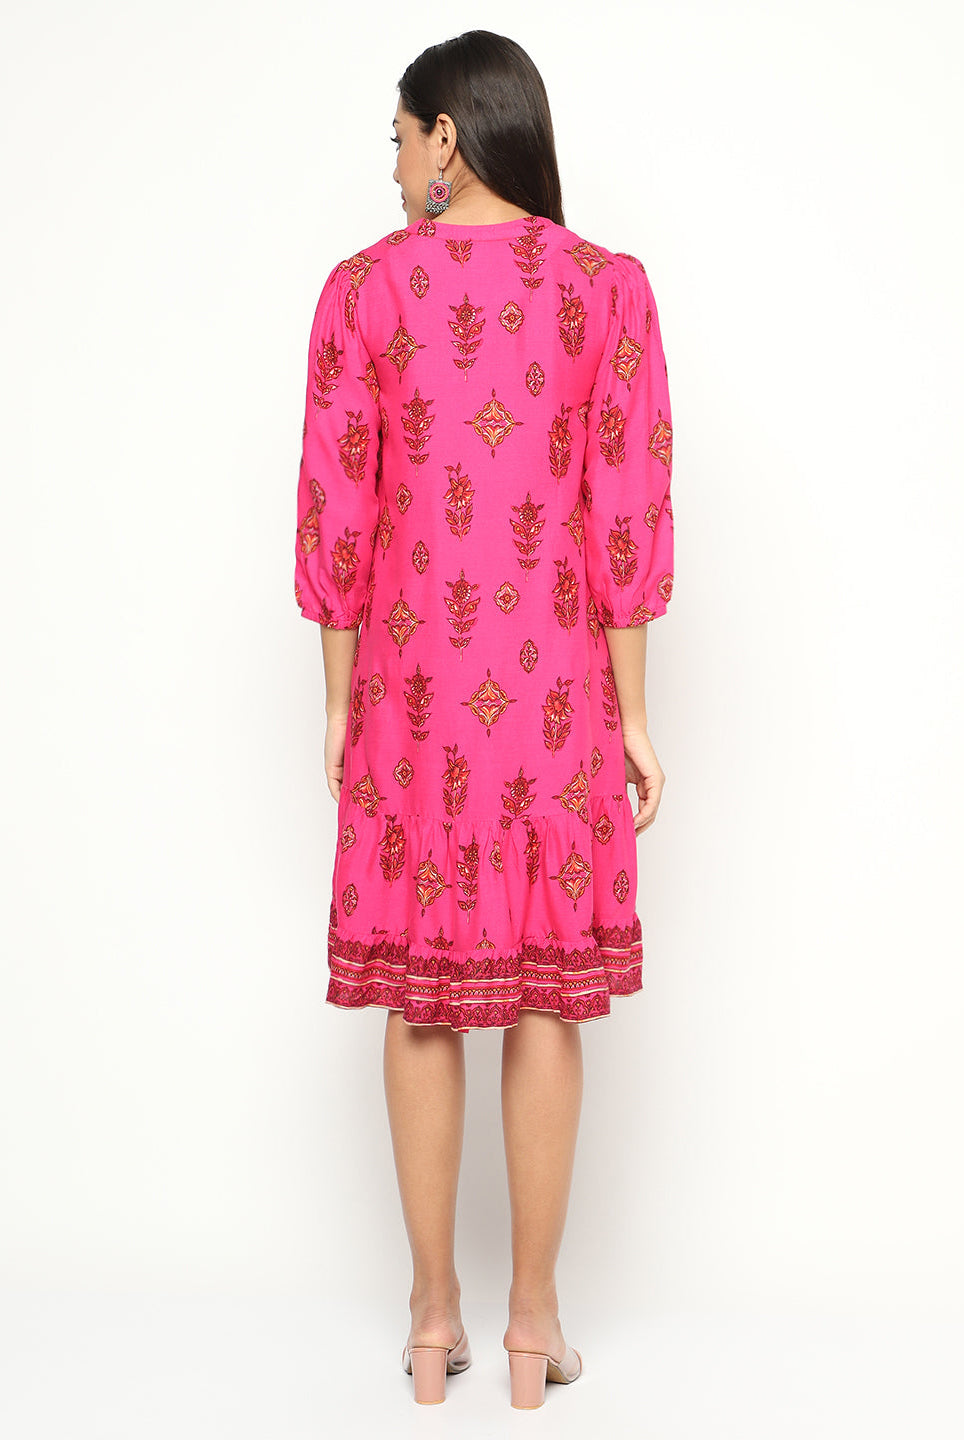 Fuchsia Printed Flared Dress